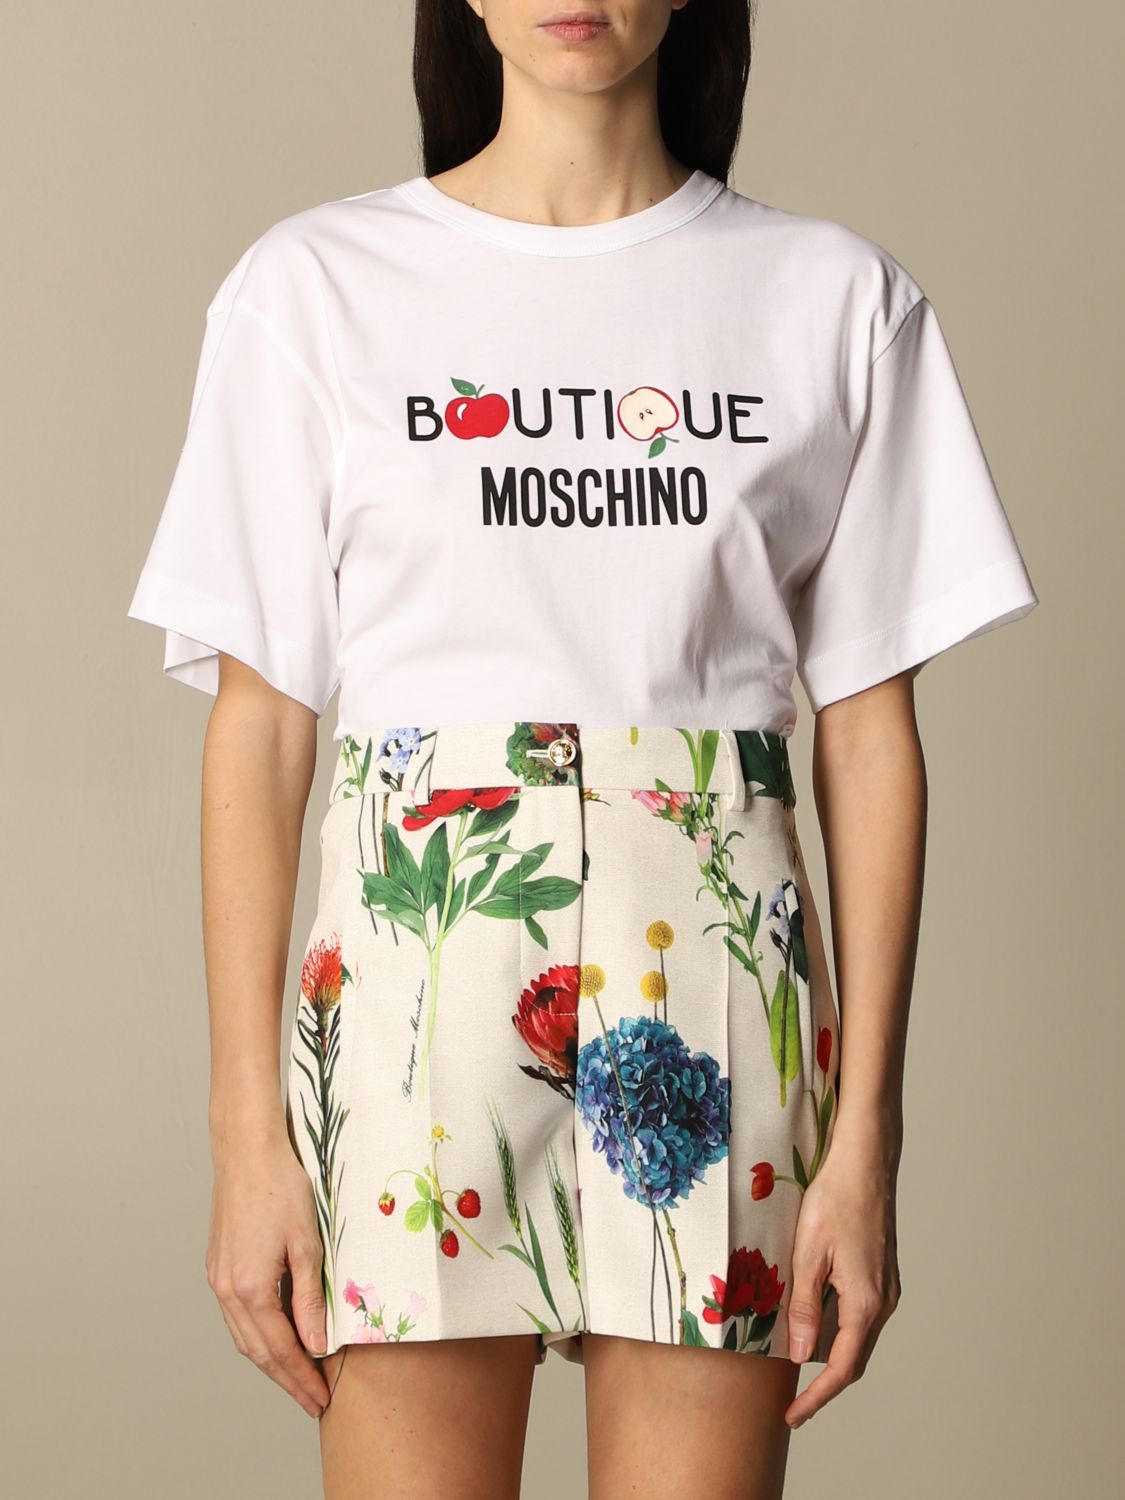 T boutique. Moschino t Shirt. Футболки Москино женские. Boutique Moschino. Moschino рубашка.